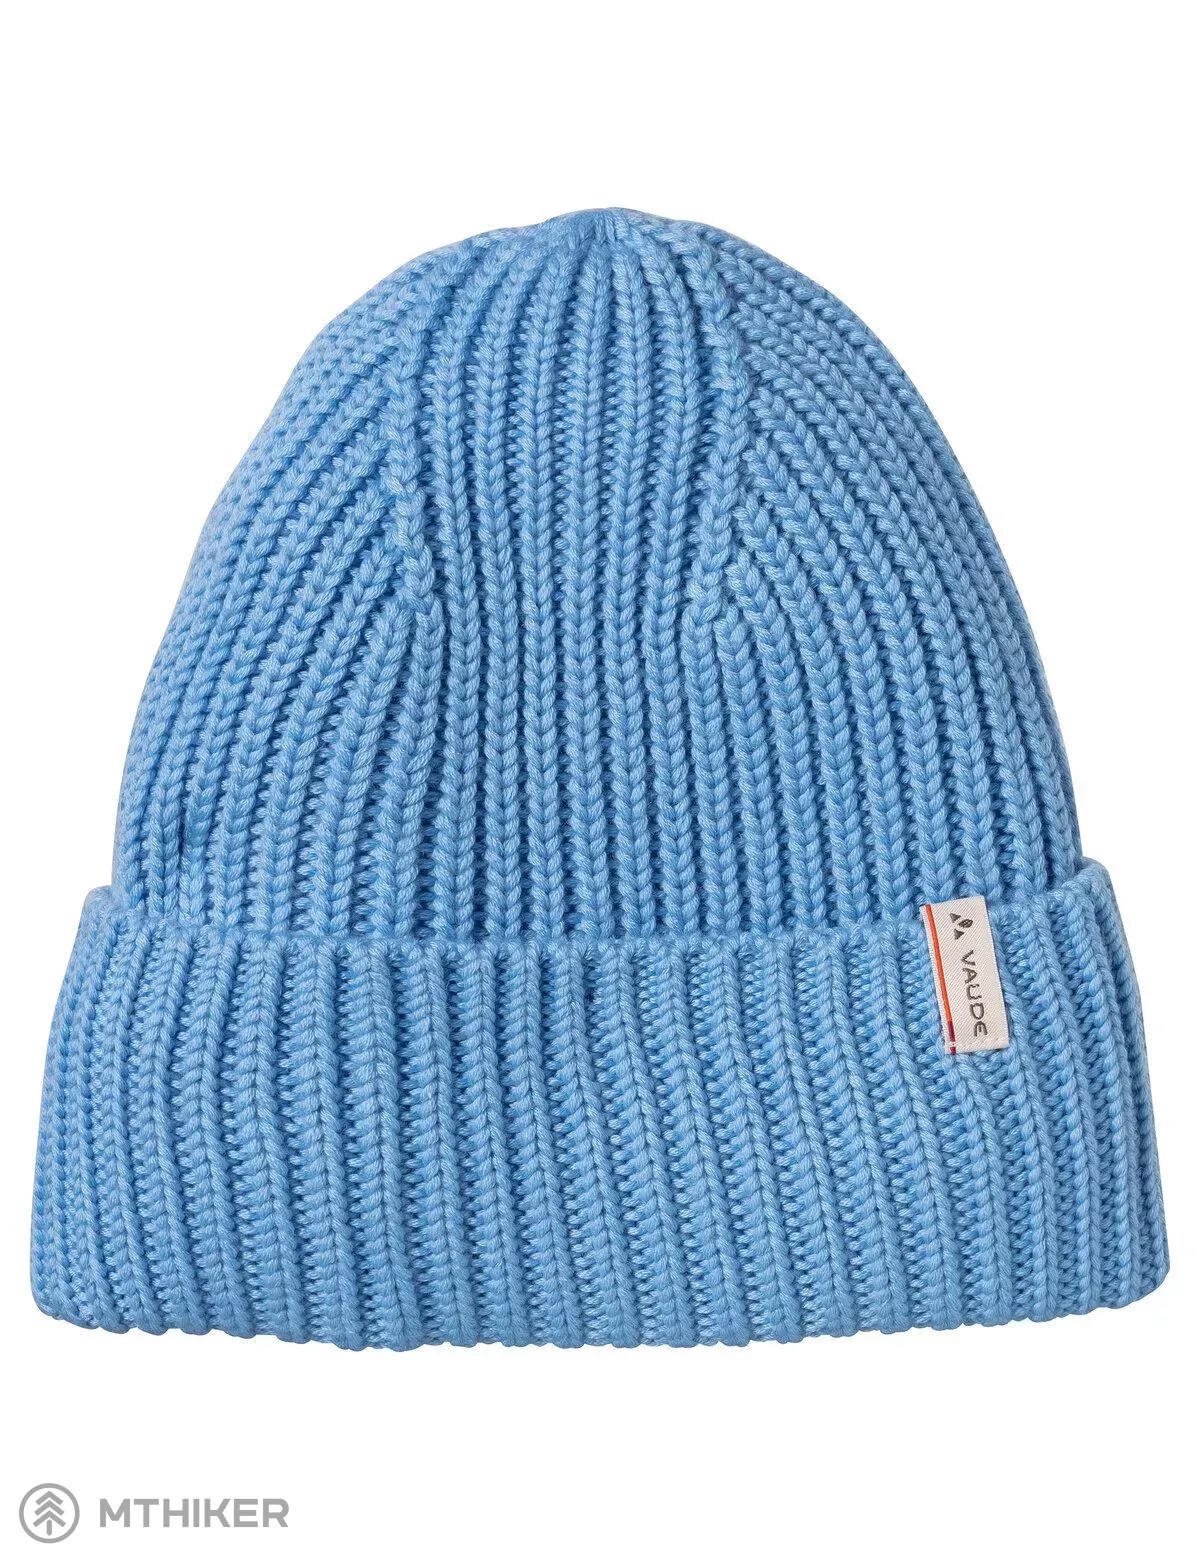 VAUDE cap, blue II Moena Beanie pastel